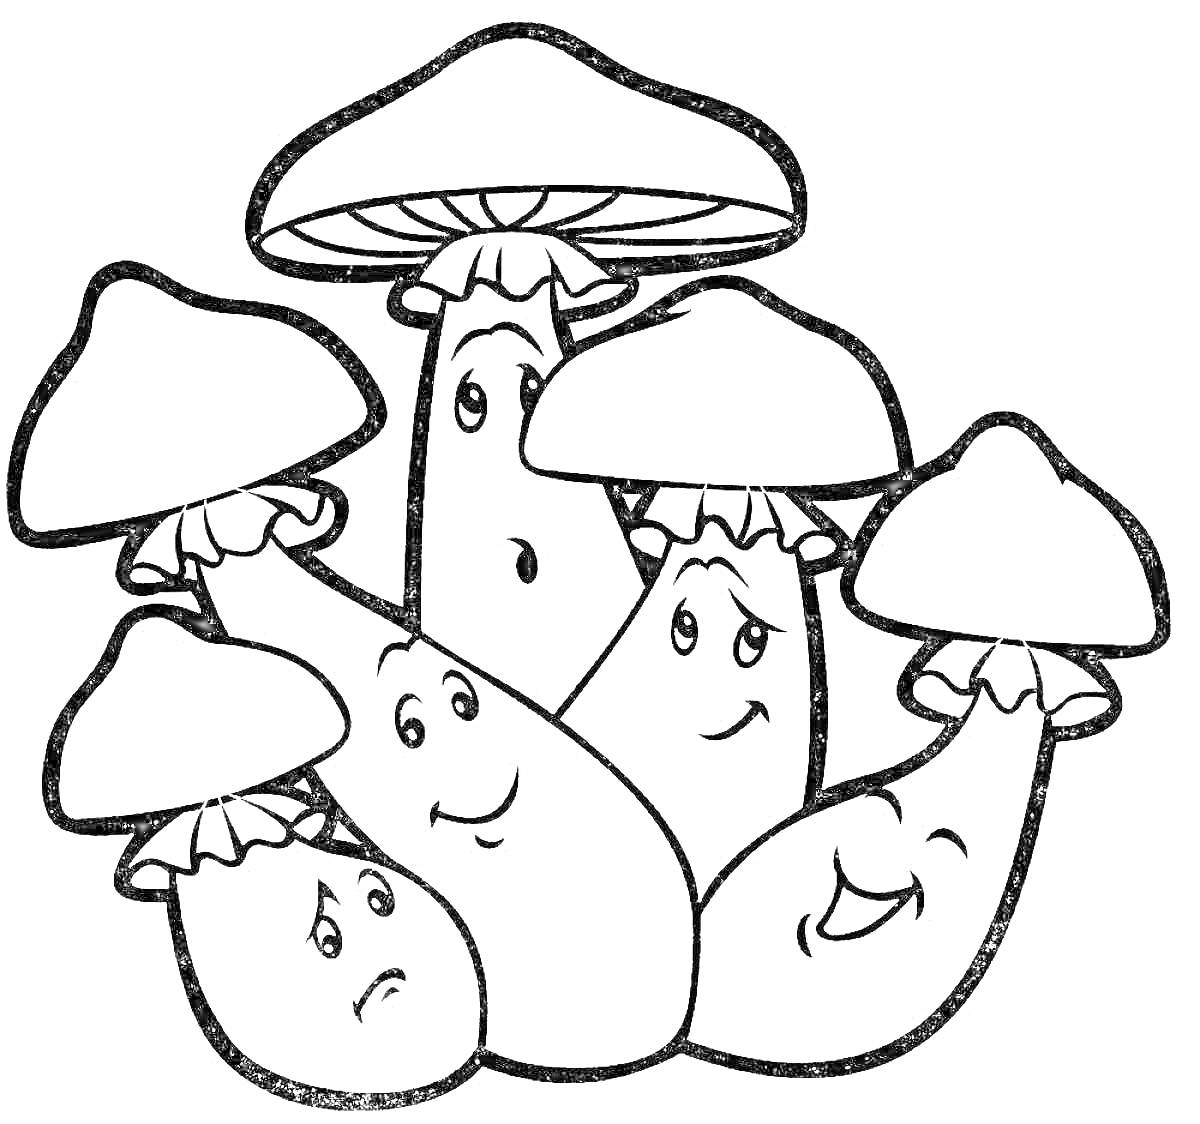 Раскраска Группа грибов с лицами и шляпками разного размера